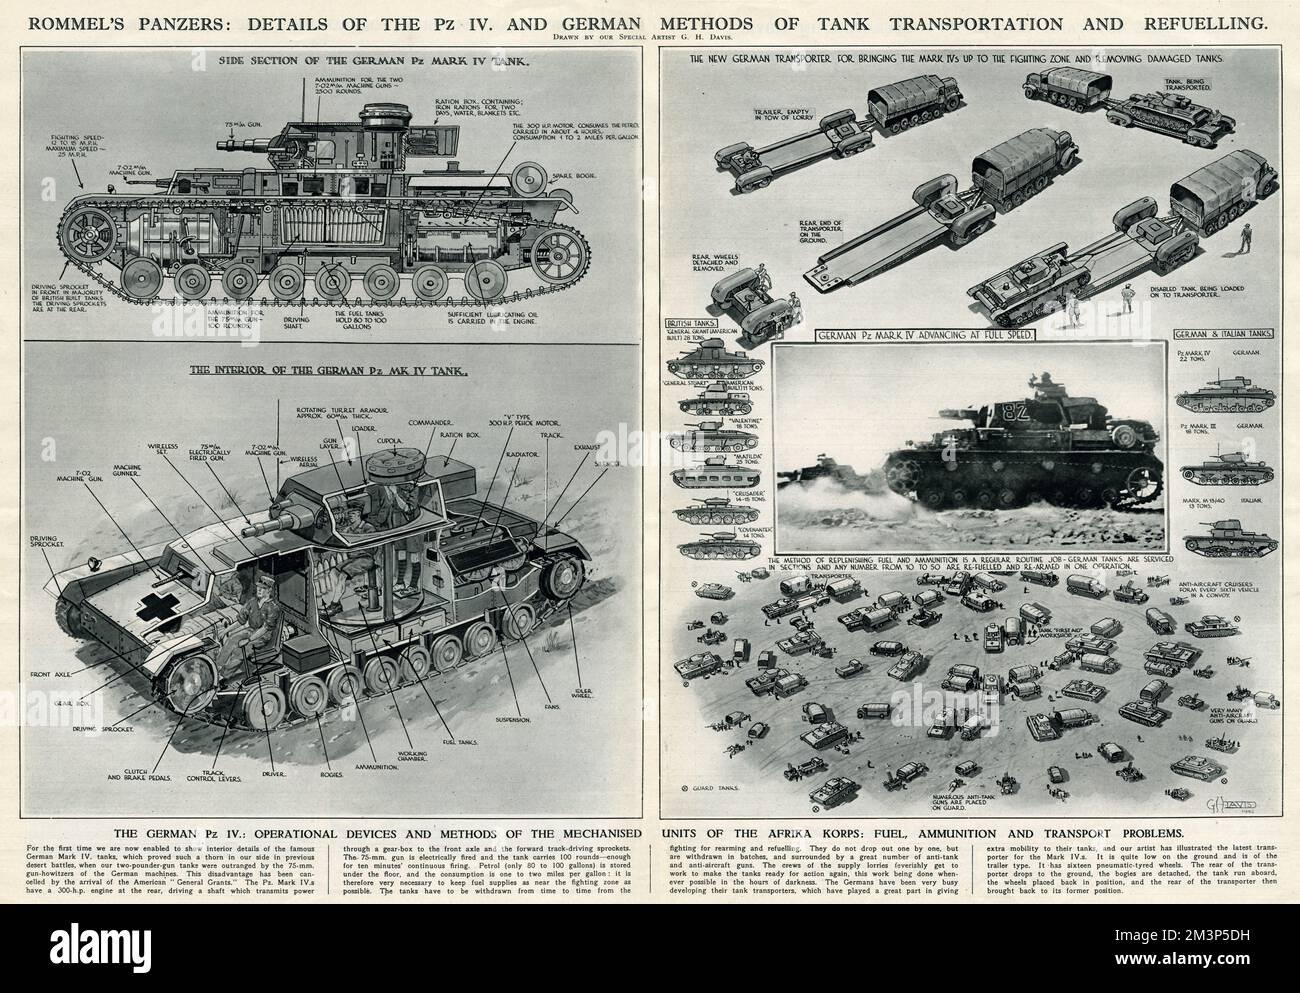 Rommel's Panzers: Dettagli del Marco IV della PZ, e metodi tedeschi di trasporto e rifornimento di serbatoi durante la seconda guerra mondiale. Data: 1942 Foto Stock